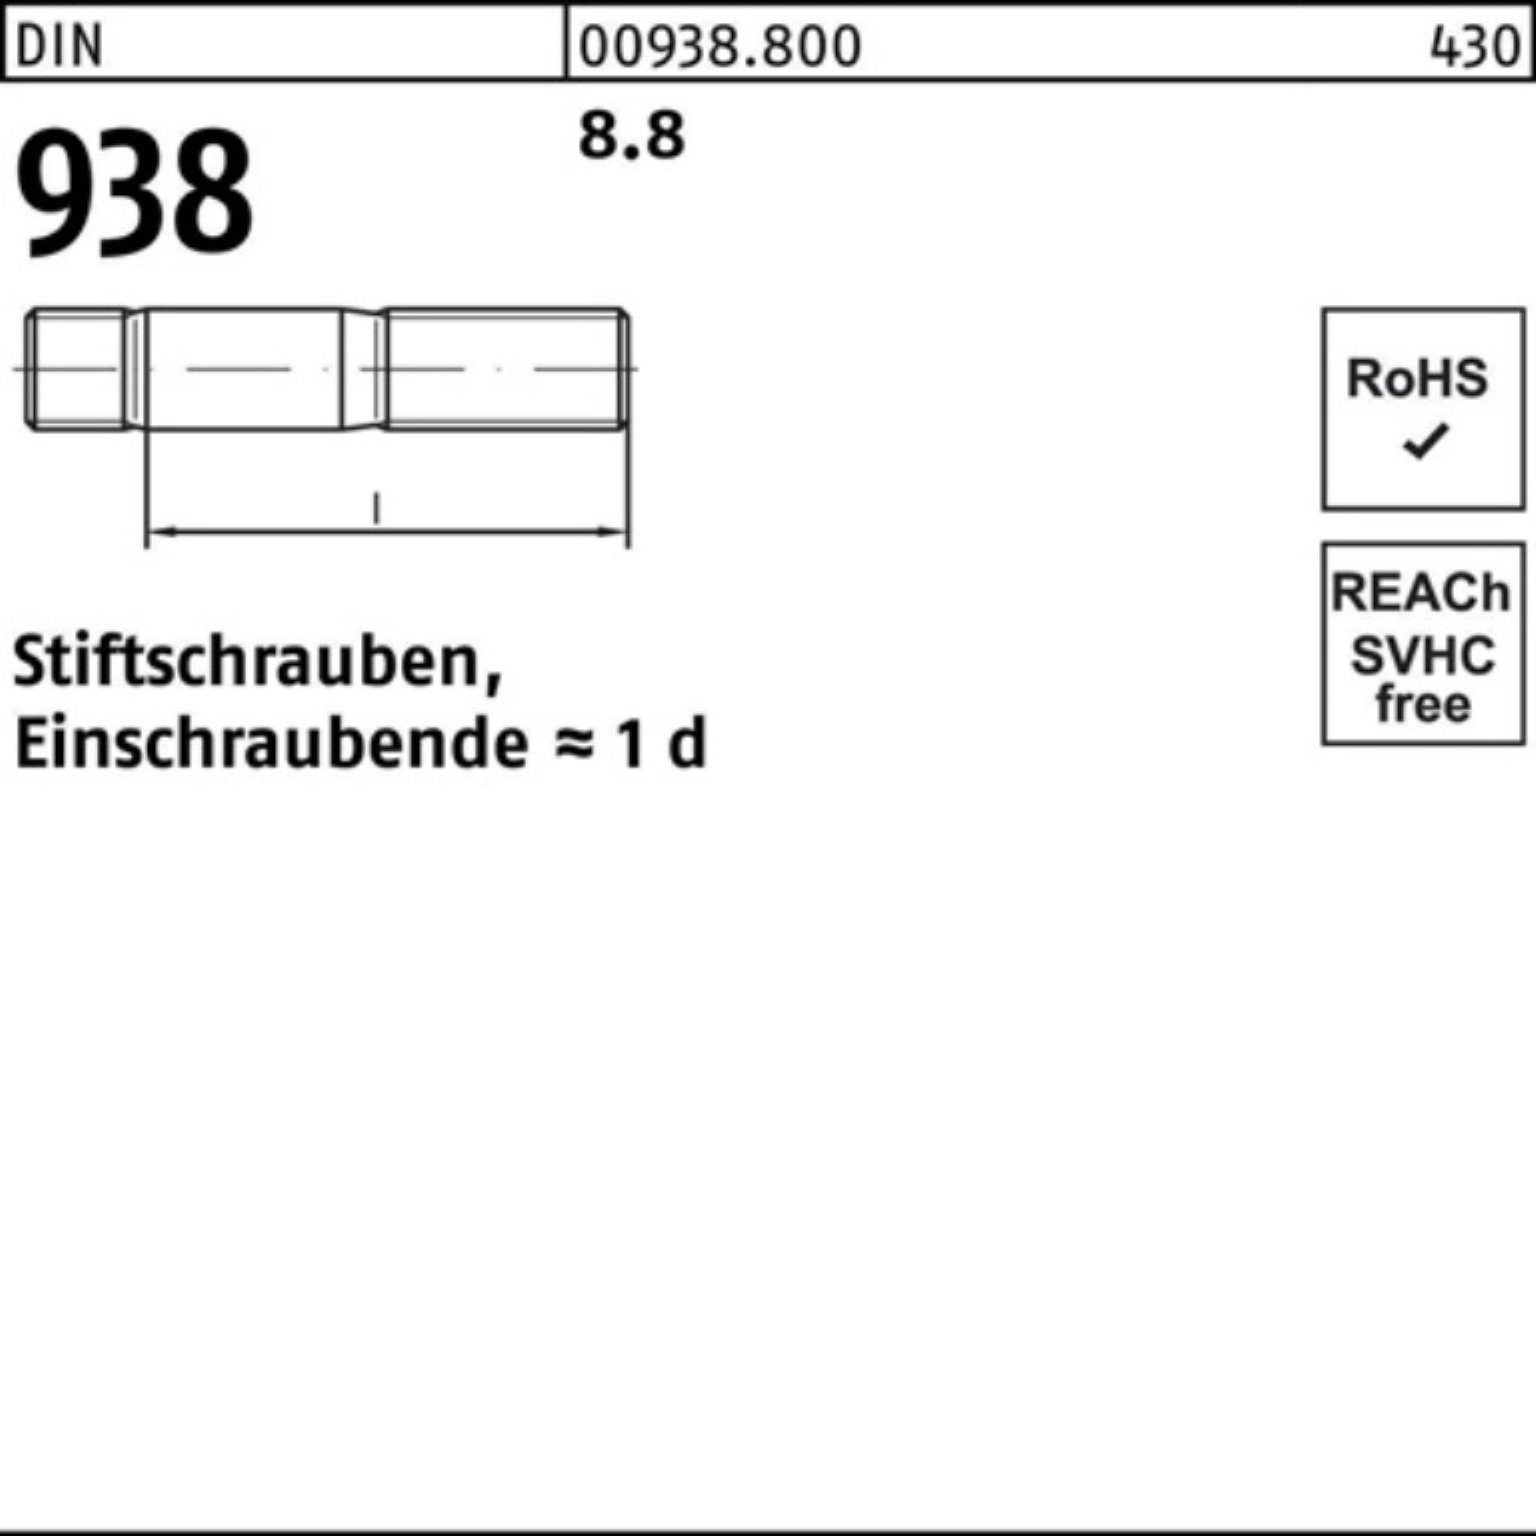 938 938 100er Stiftschraube Sti DIN Pack 10 Stiftschraube 60 8.8 M24x 8.8 Stück Reyher DIN